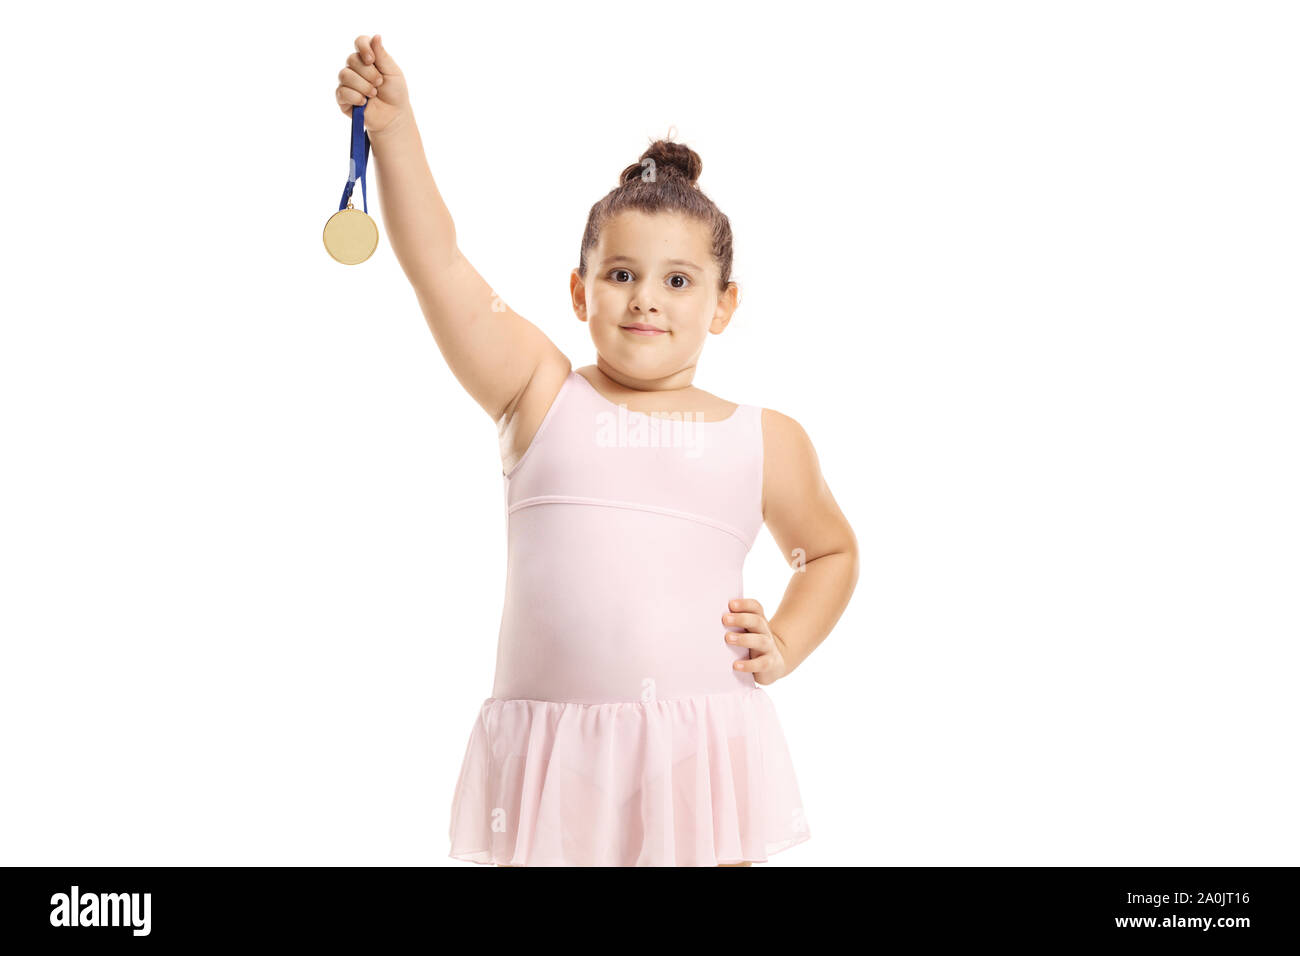 Petite danseuse de ballet girl holding une médaille d'isolé sur fond blanc Banque D'Images